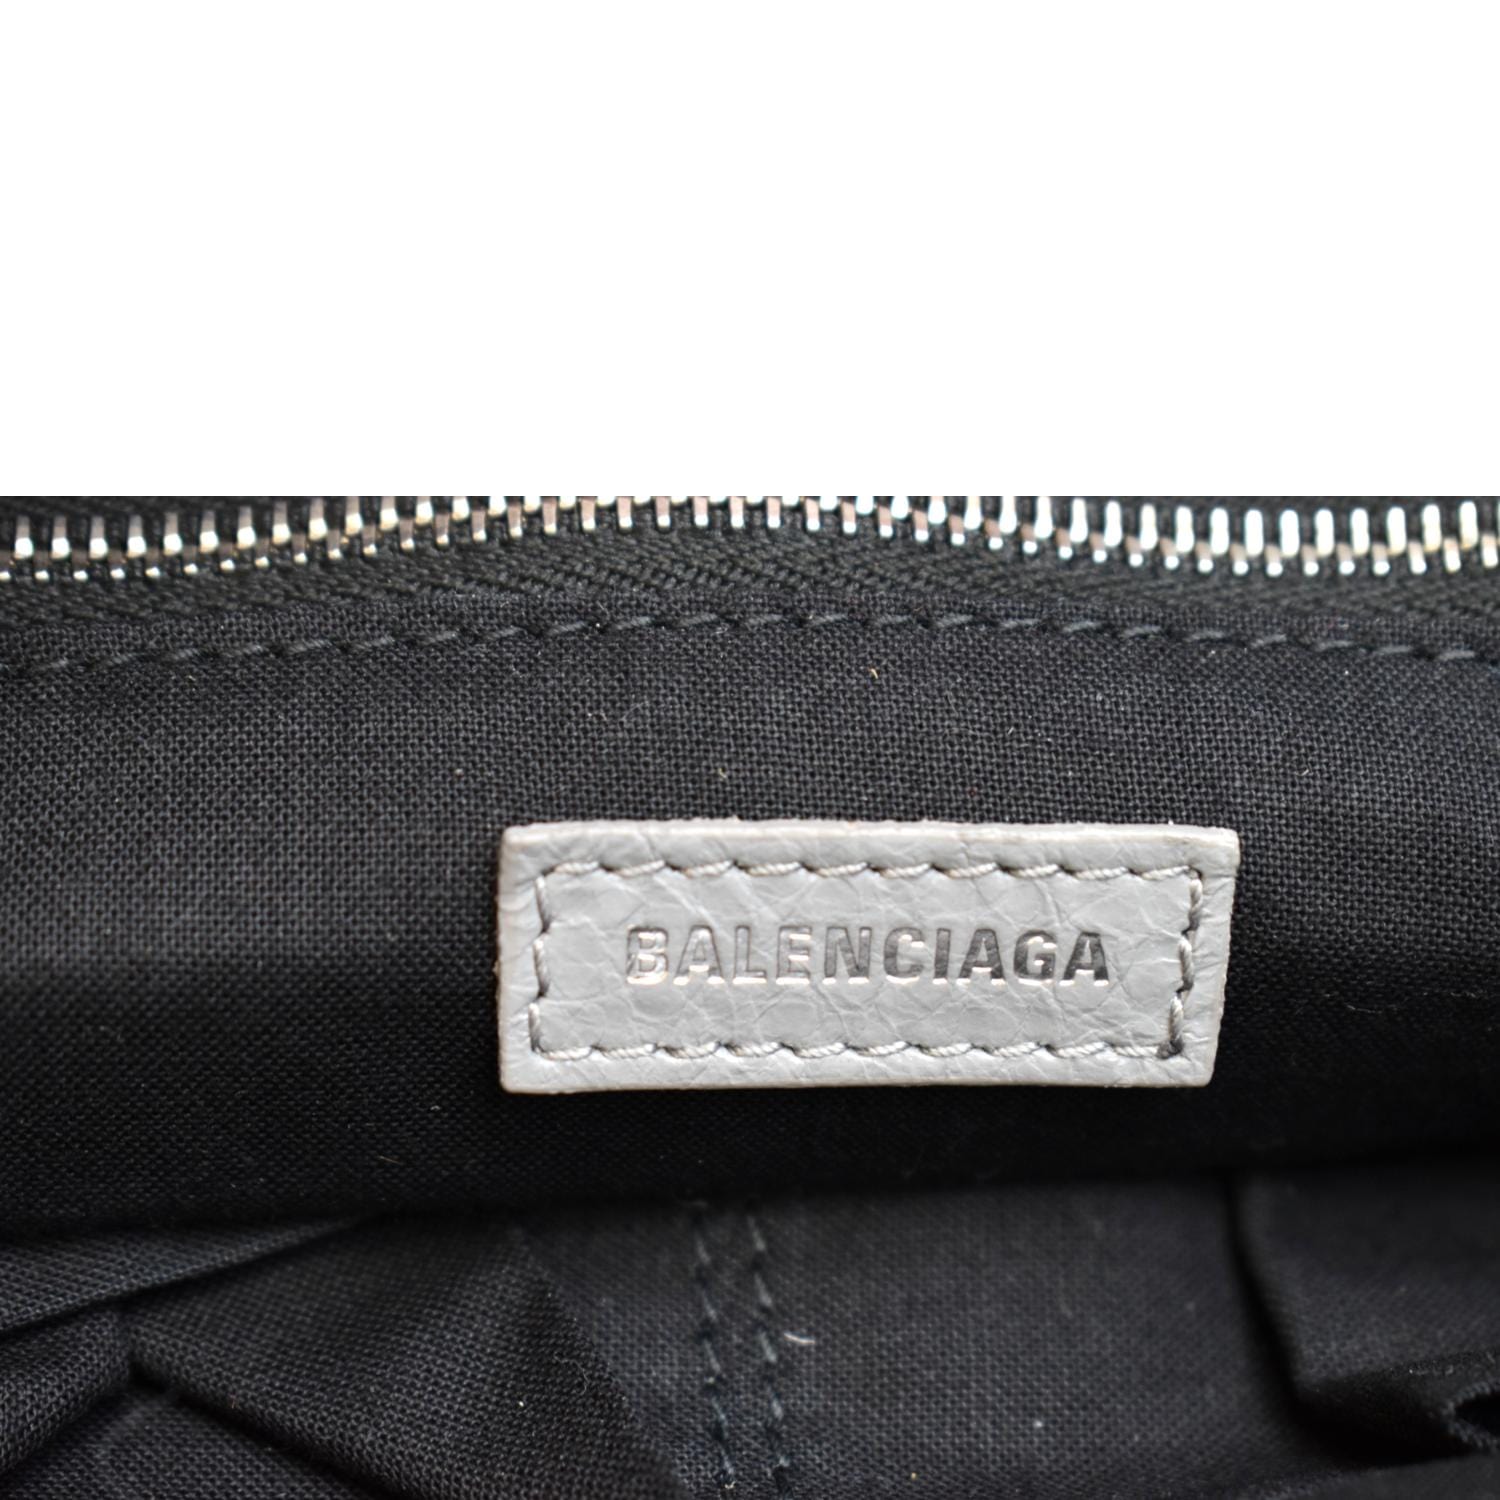 Balenciaga Classic City Shoulder Bag Small Black